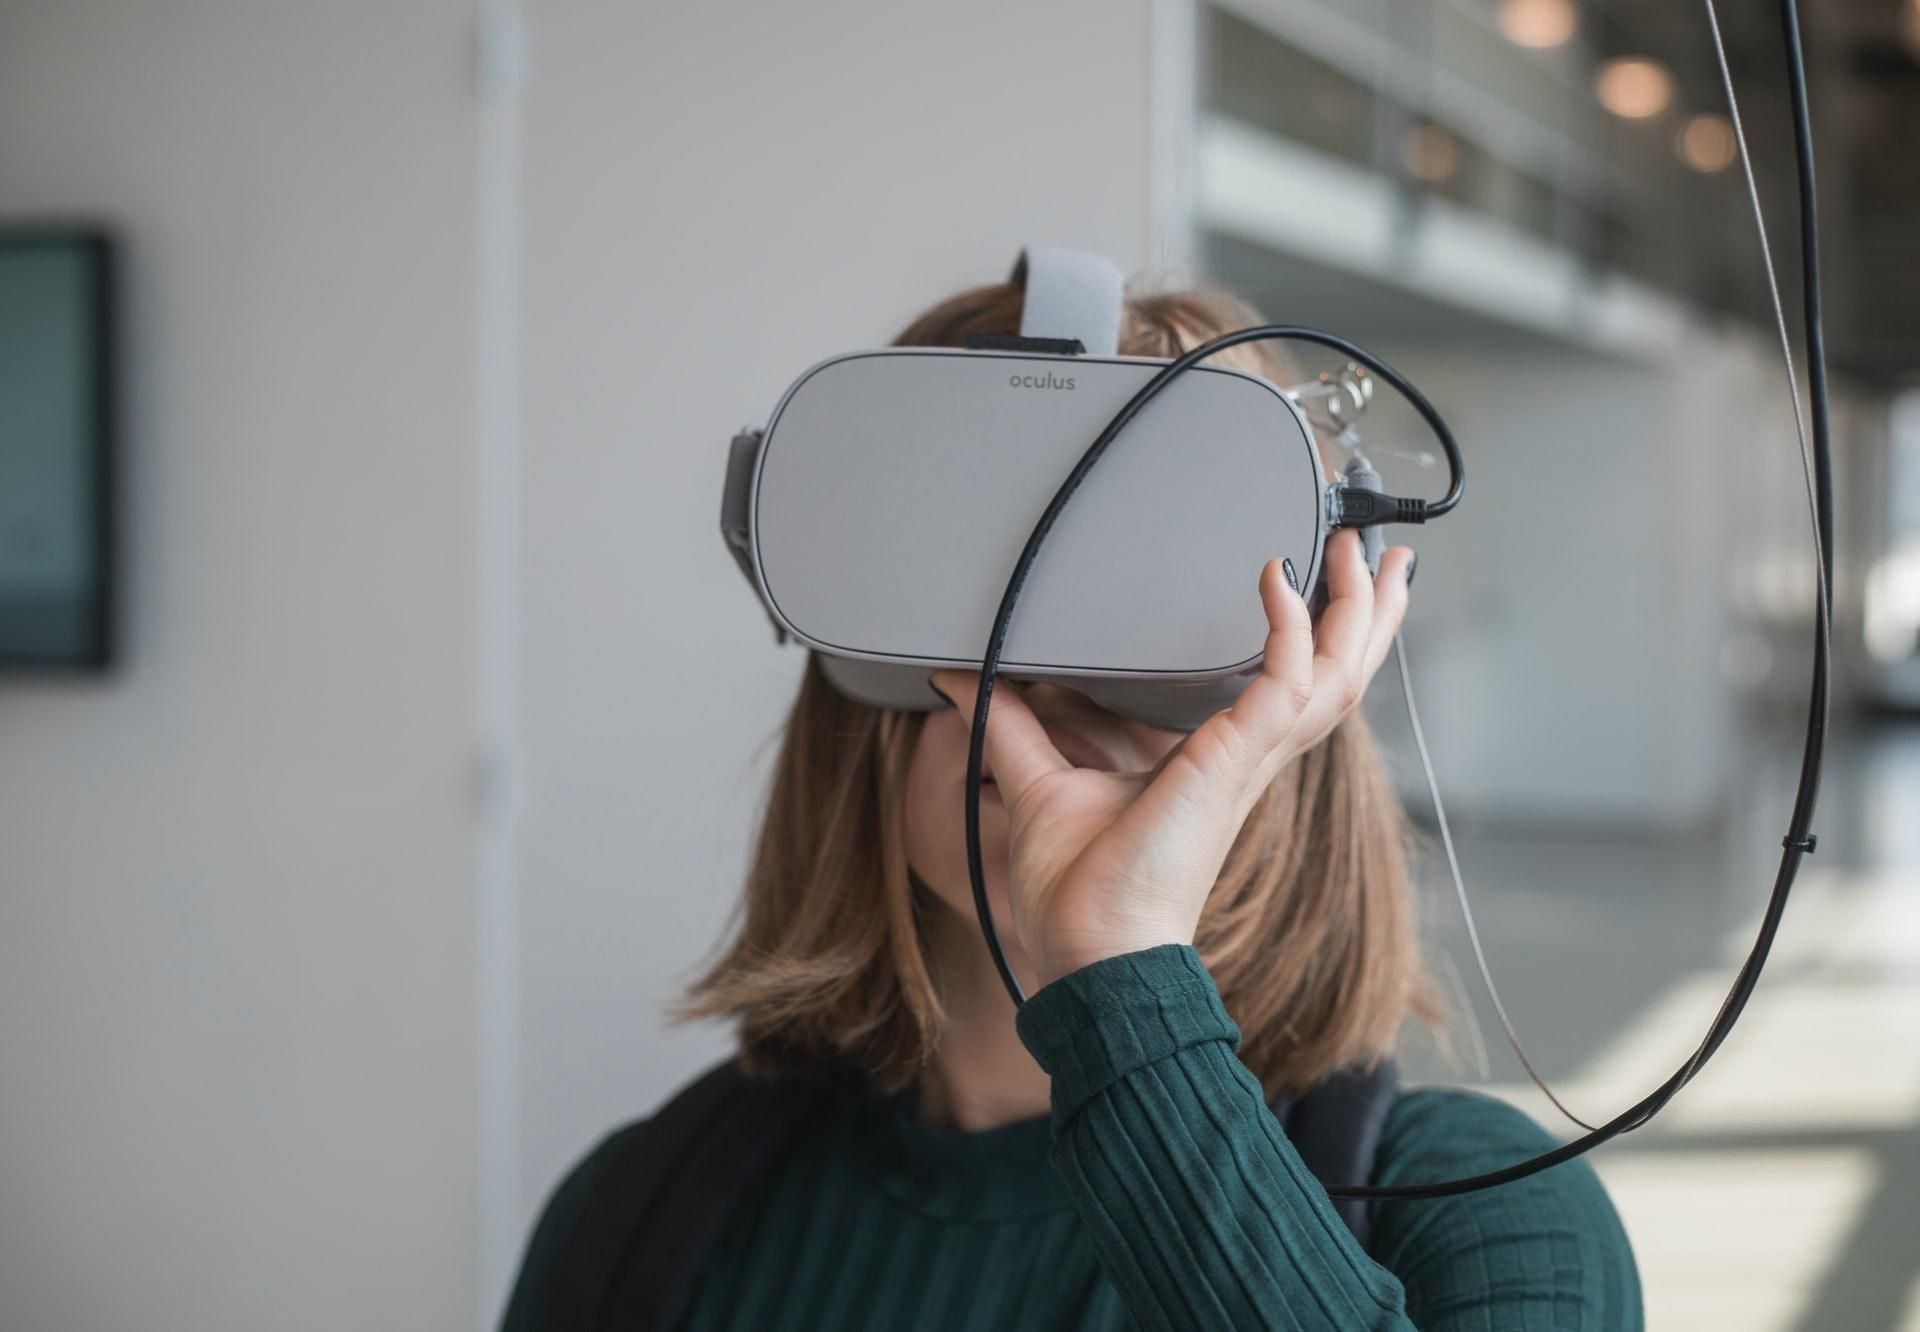 VR-терапія: у США дозволили лікування хронічного болю за допомогою віртуальної реальності - Новини технологій - Техно